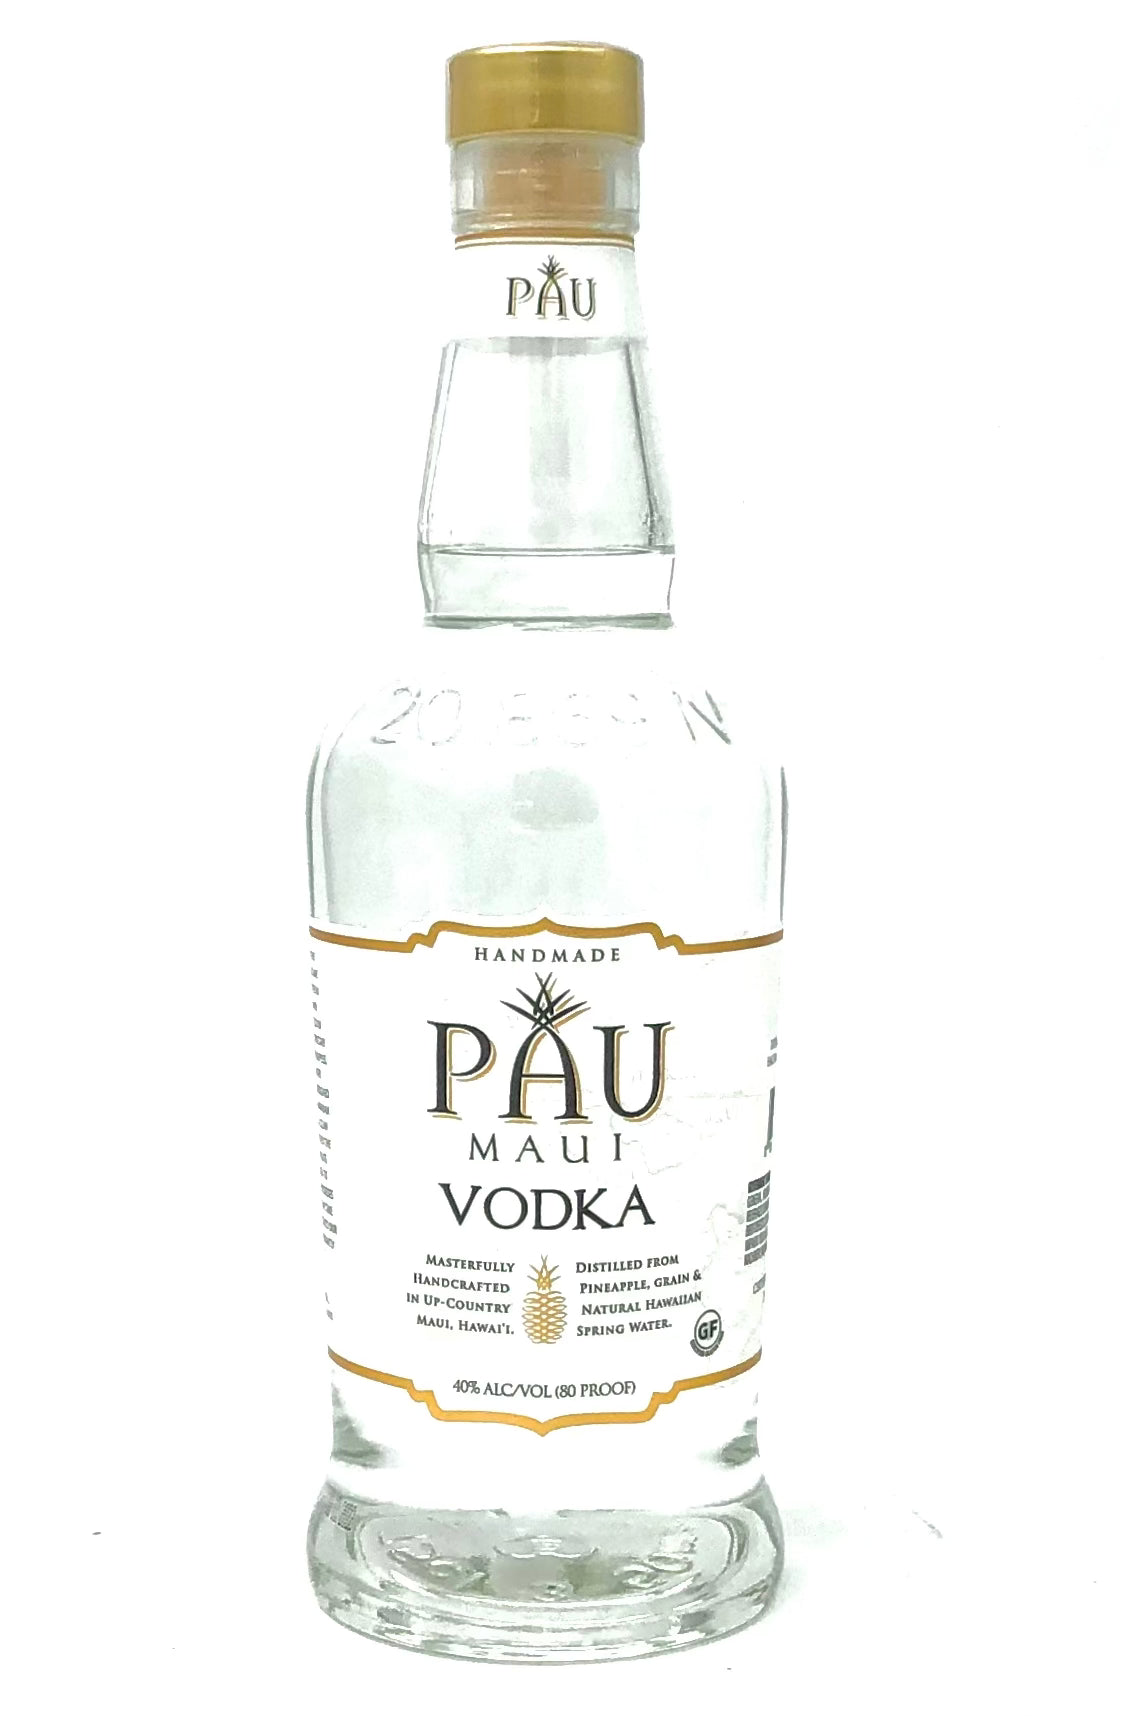 PAU Maui Hand Craft Vodka